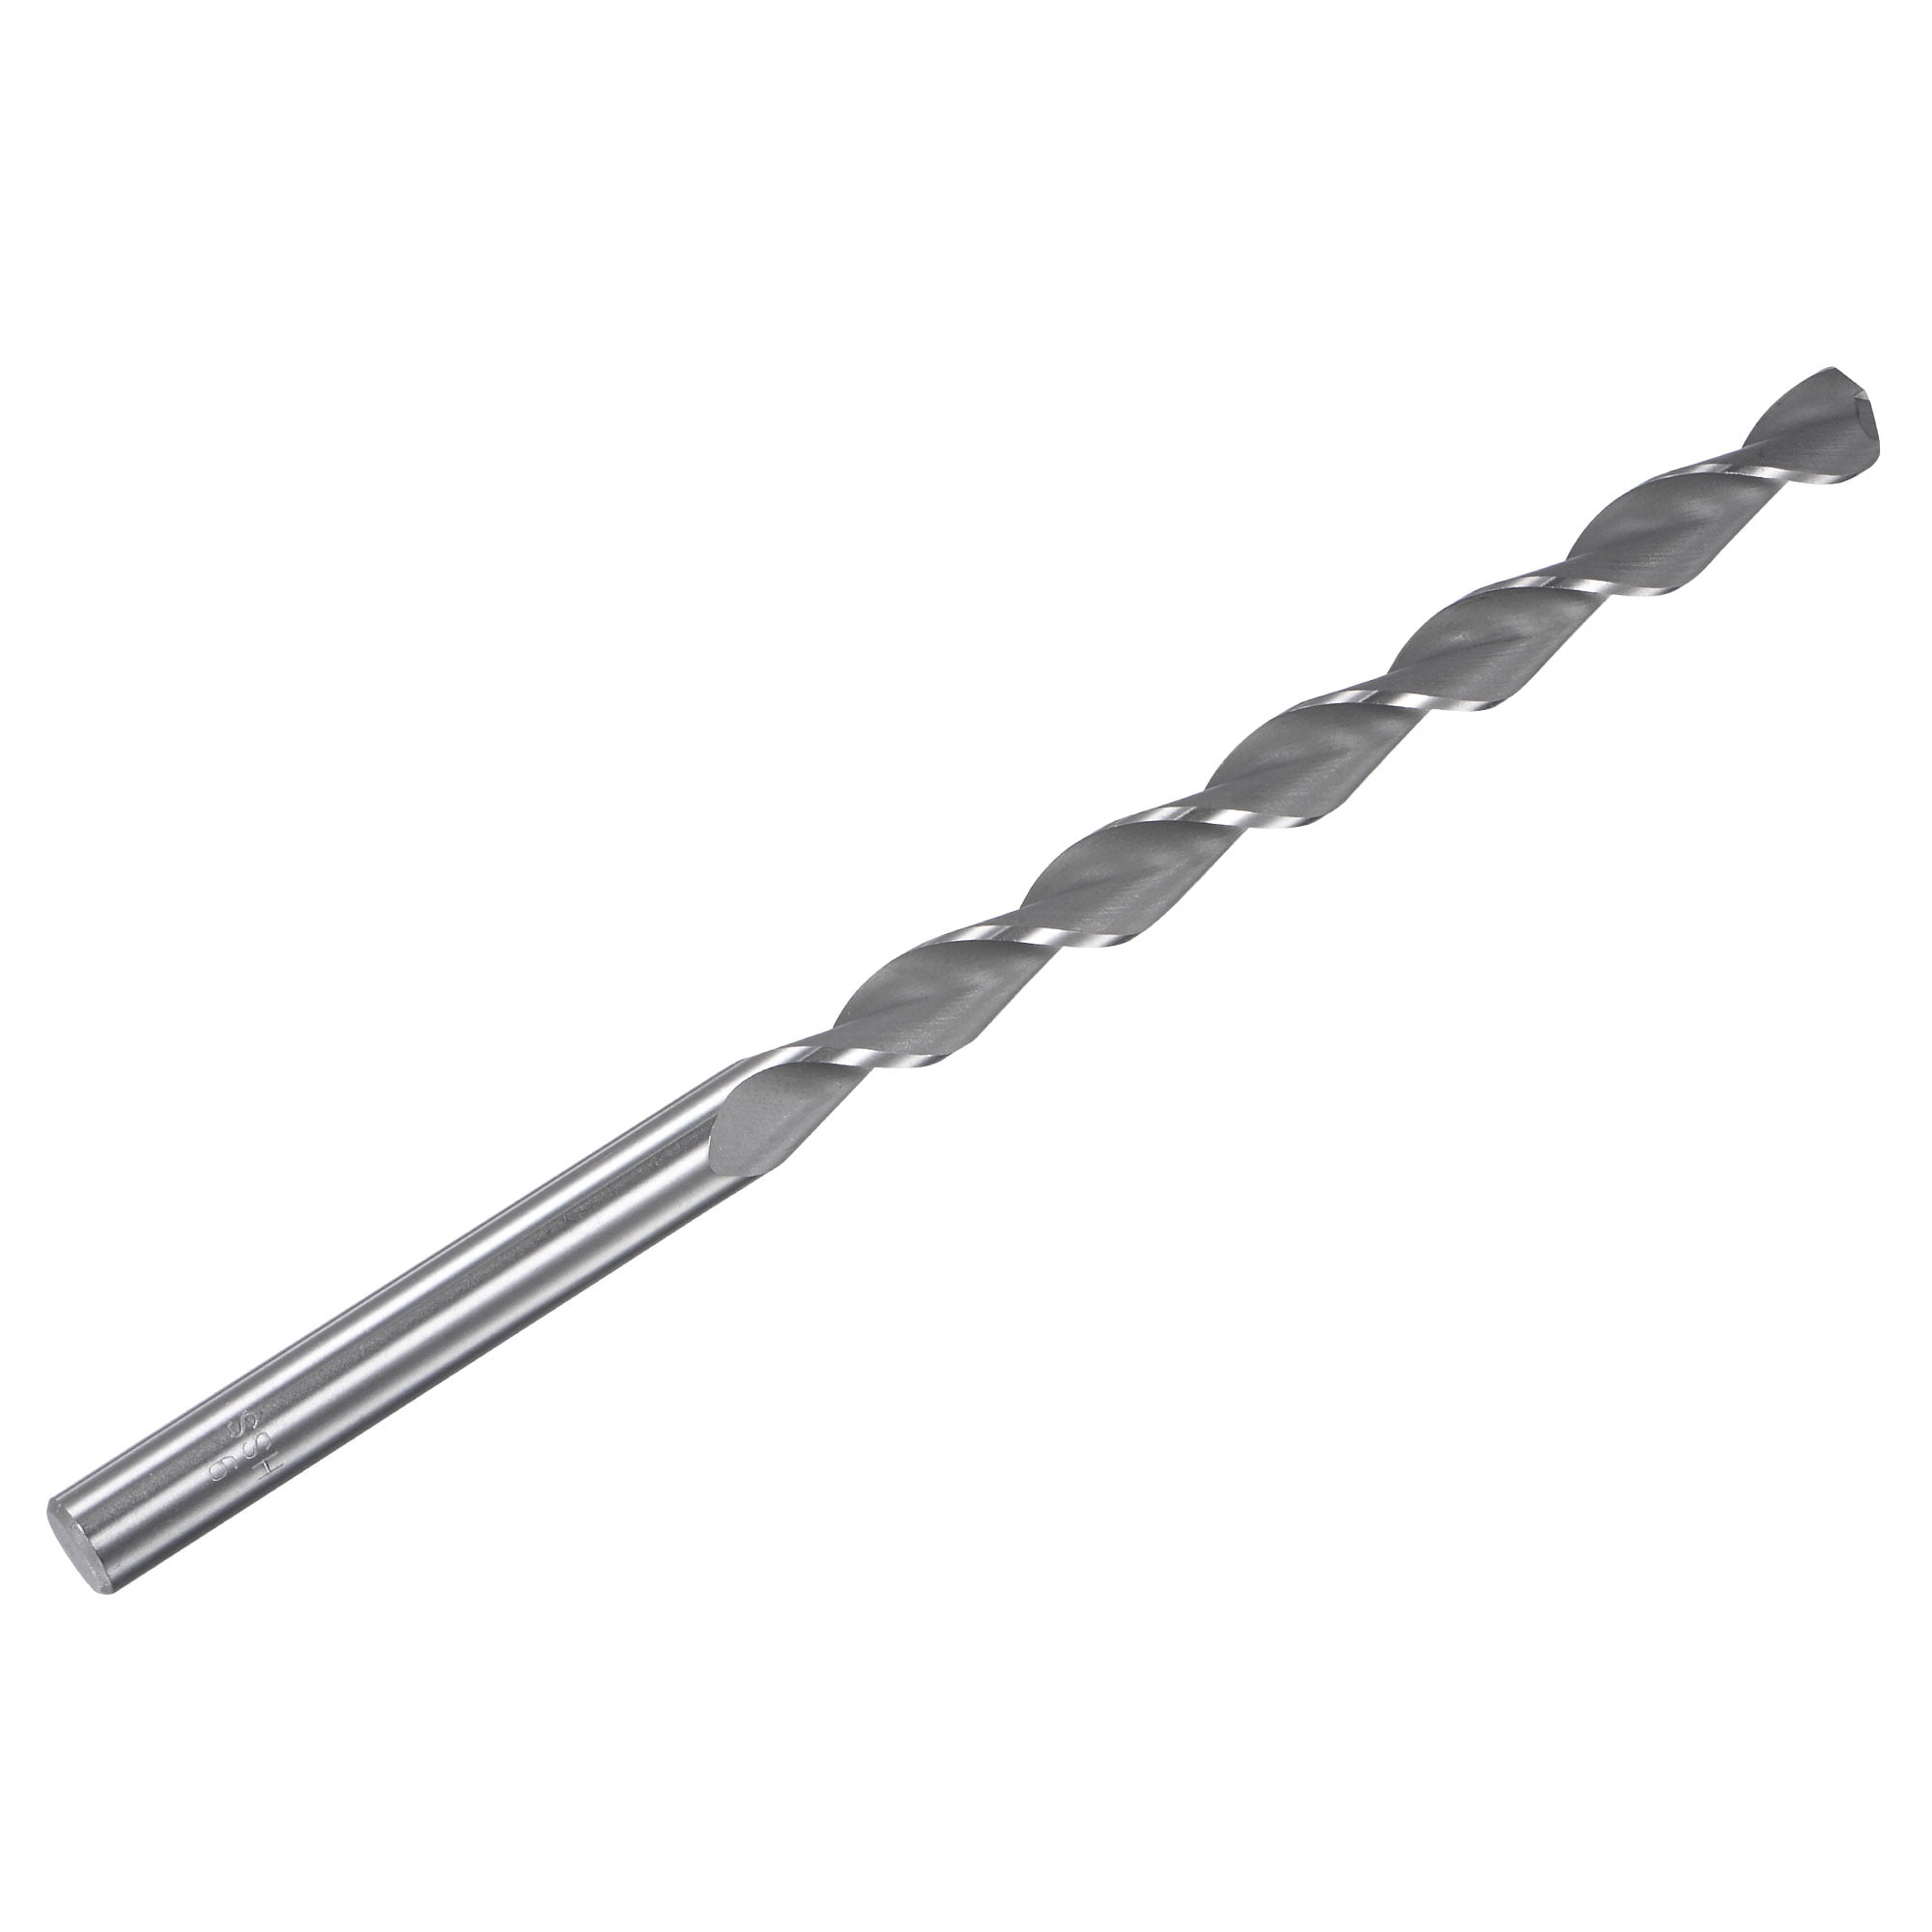 uxcell Uxcell Aluminum Iron Milling 3 Flute 9mm Diameter End Mill Bit 